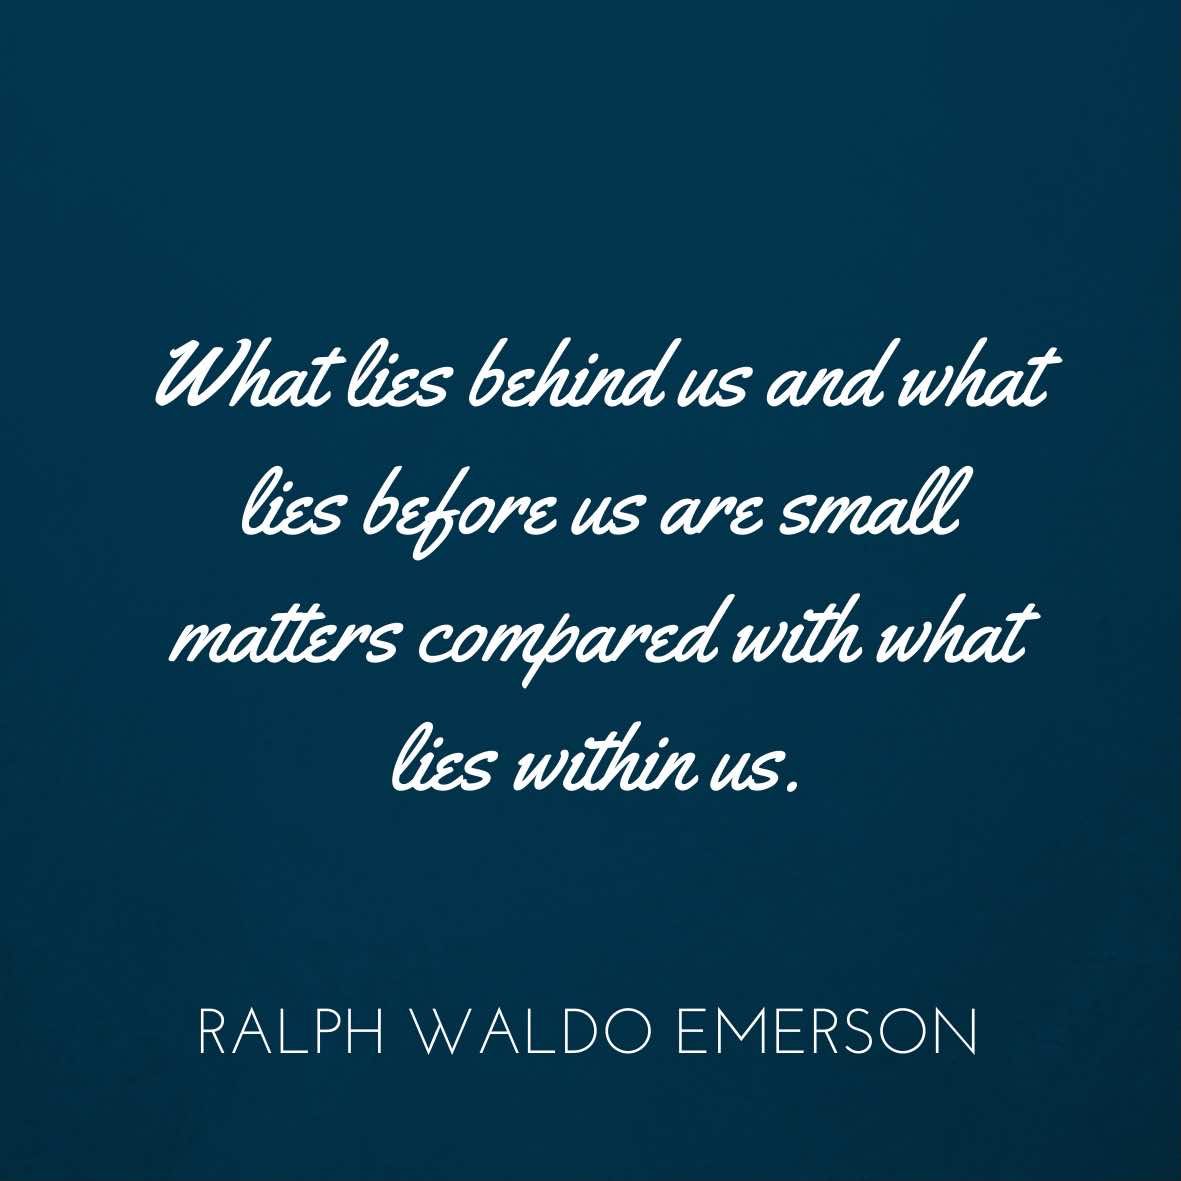 Ralph Waldo Emerson On Goals